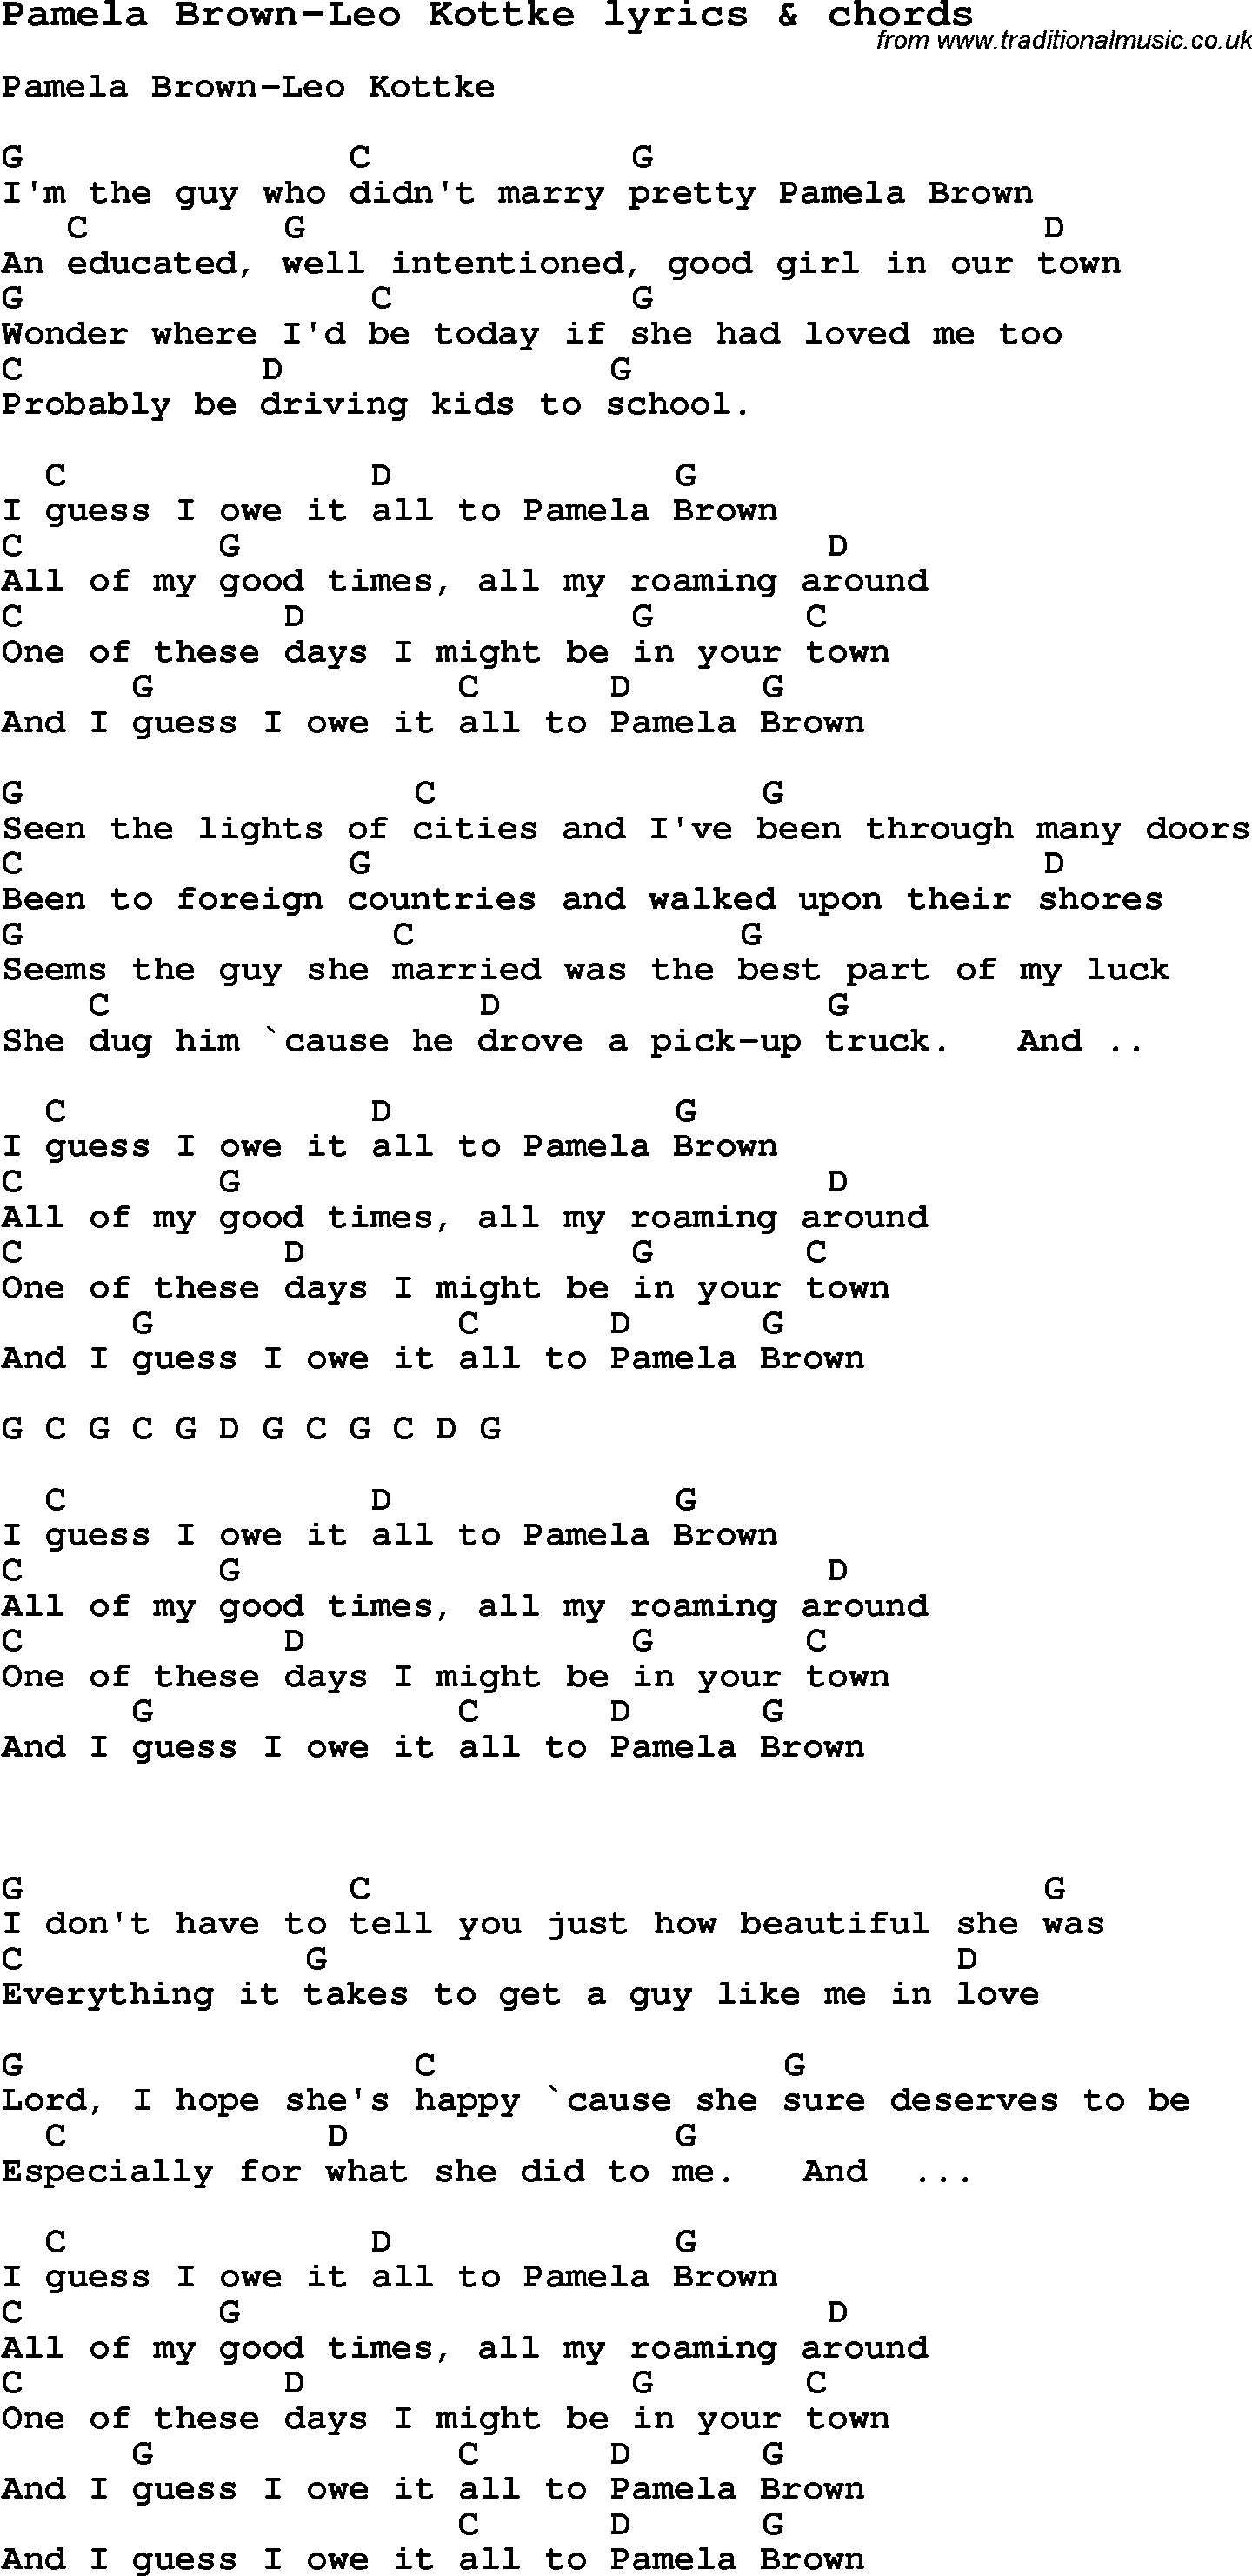 Love Song Lyrics for: Pamela Brown-Leo Kottke with chords for Ukulele, Guitar Banjo etc.